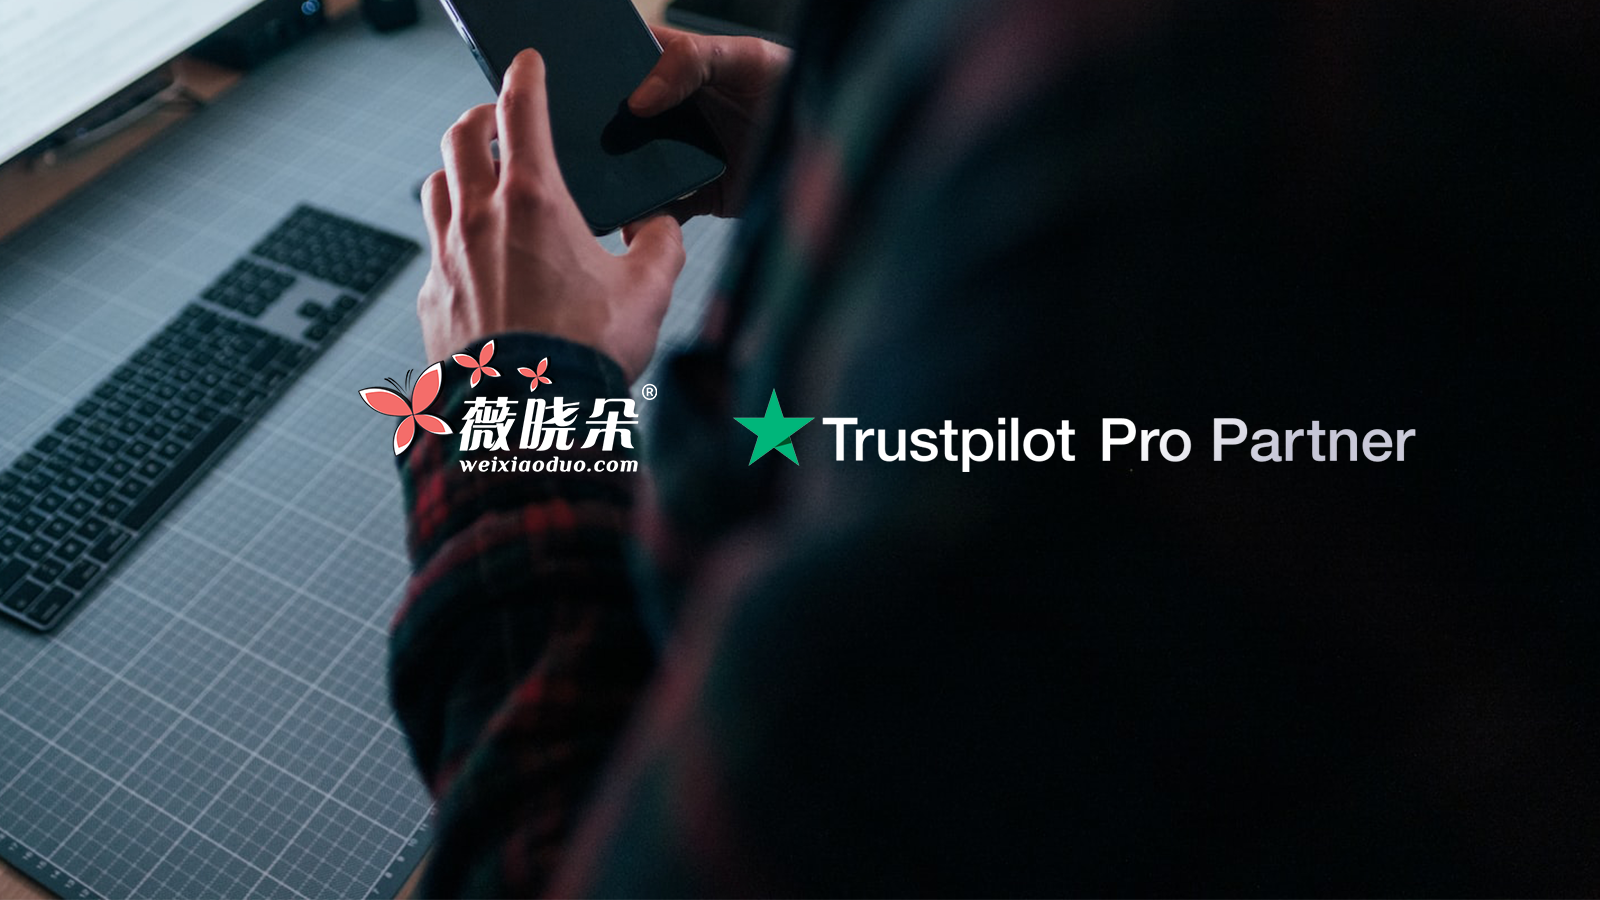 薇晓朵成为 Trustpilot 官方合作伙伴，使您的独立站更可信，获取更多客户及流量。 薇晓朵今日简报 